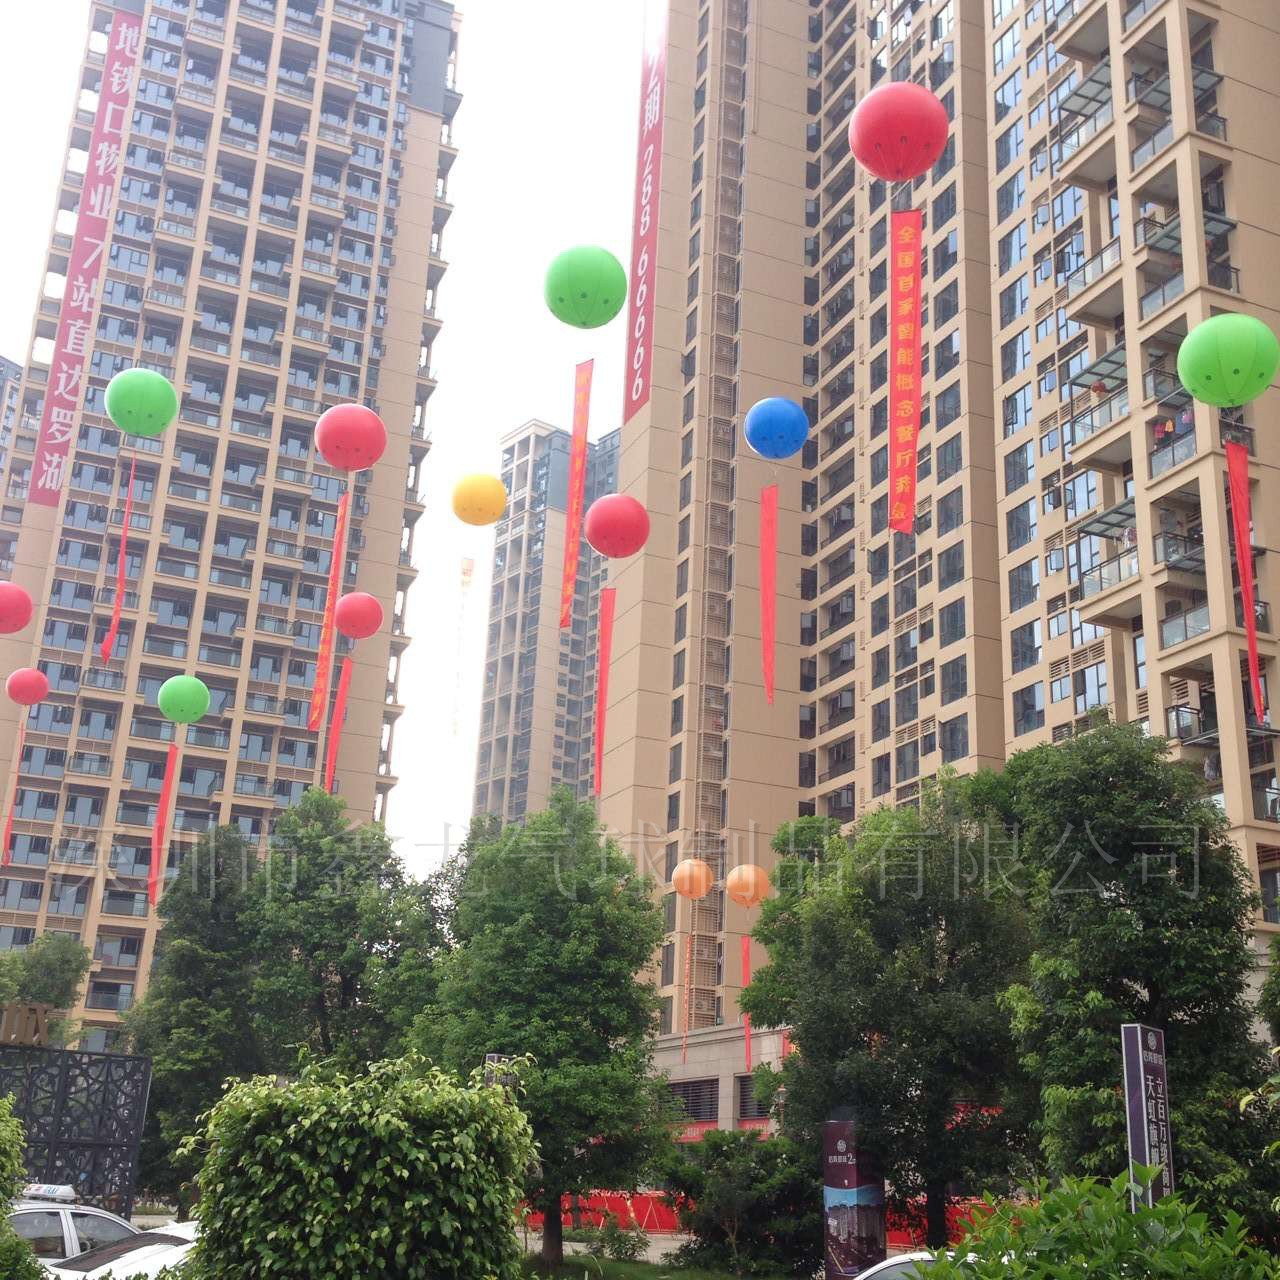 供应升空气球深圳厂家批发升空气球定制大气球广告促销气球 深圳市内现场安装图片